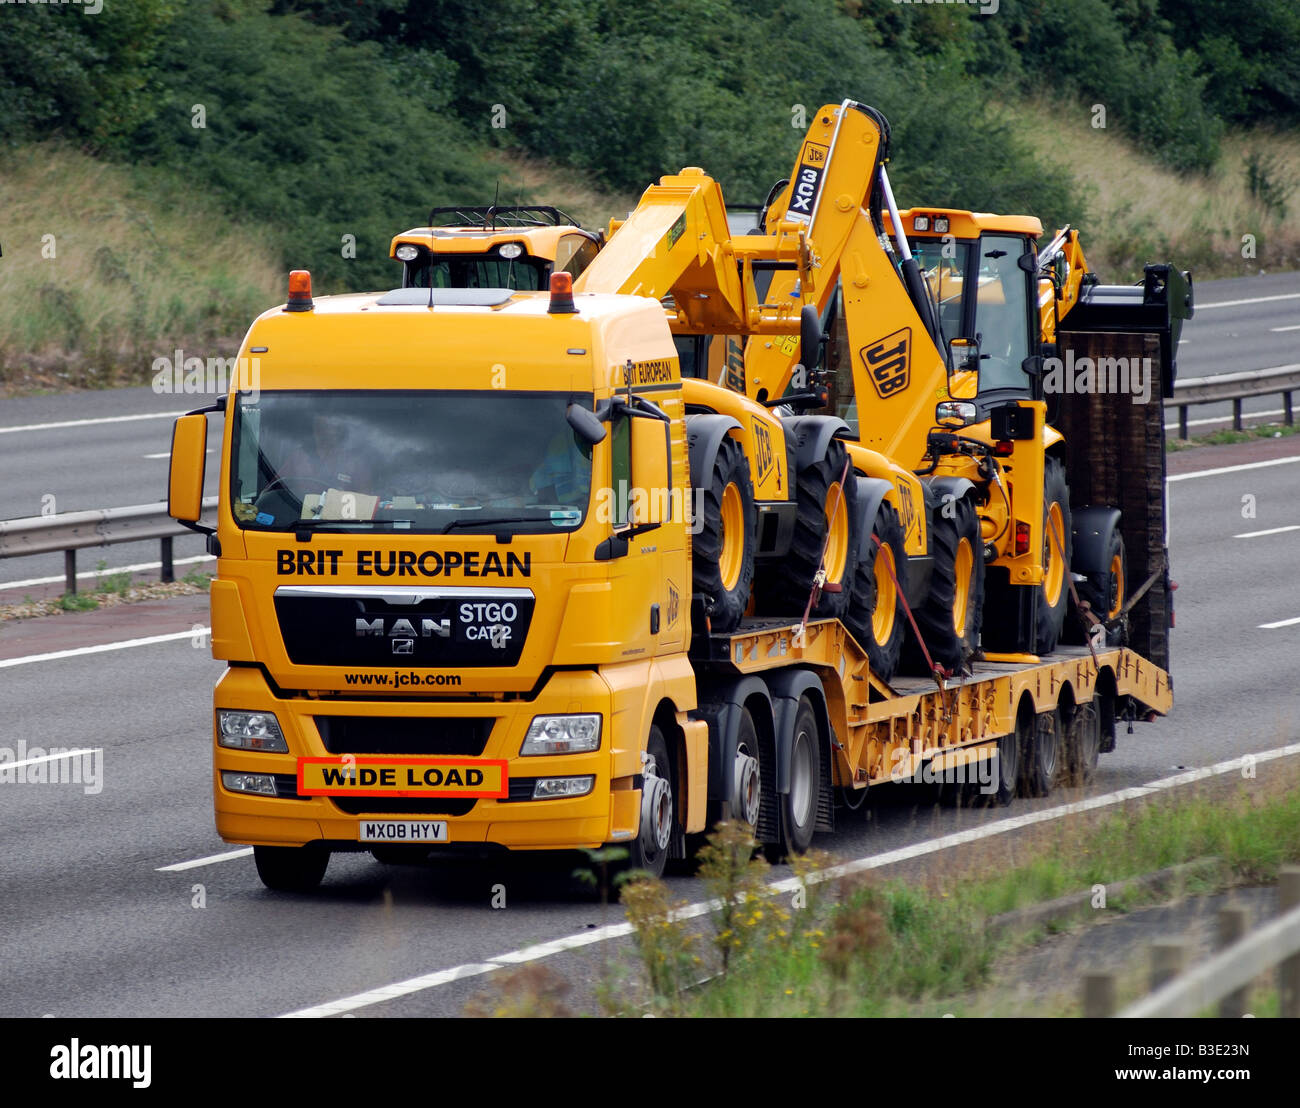 New JCB vehicles transported on M40 motorway, England, UK Stock Photo